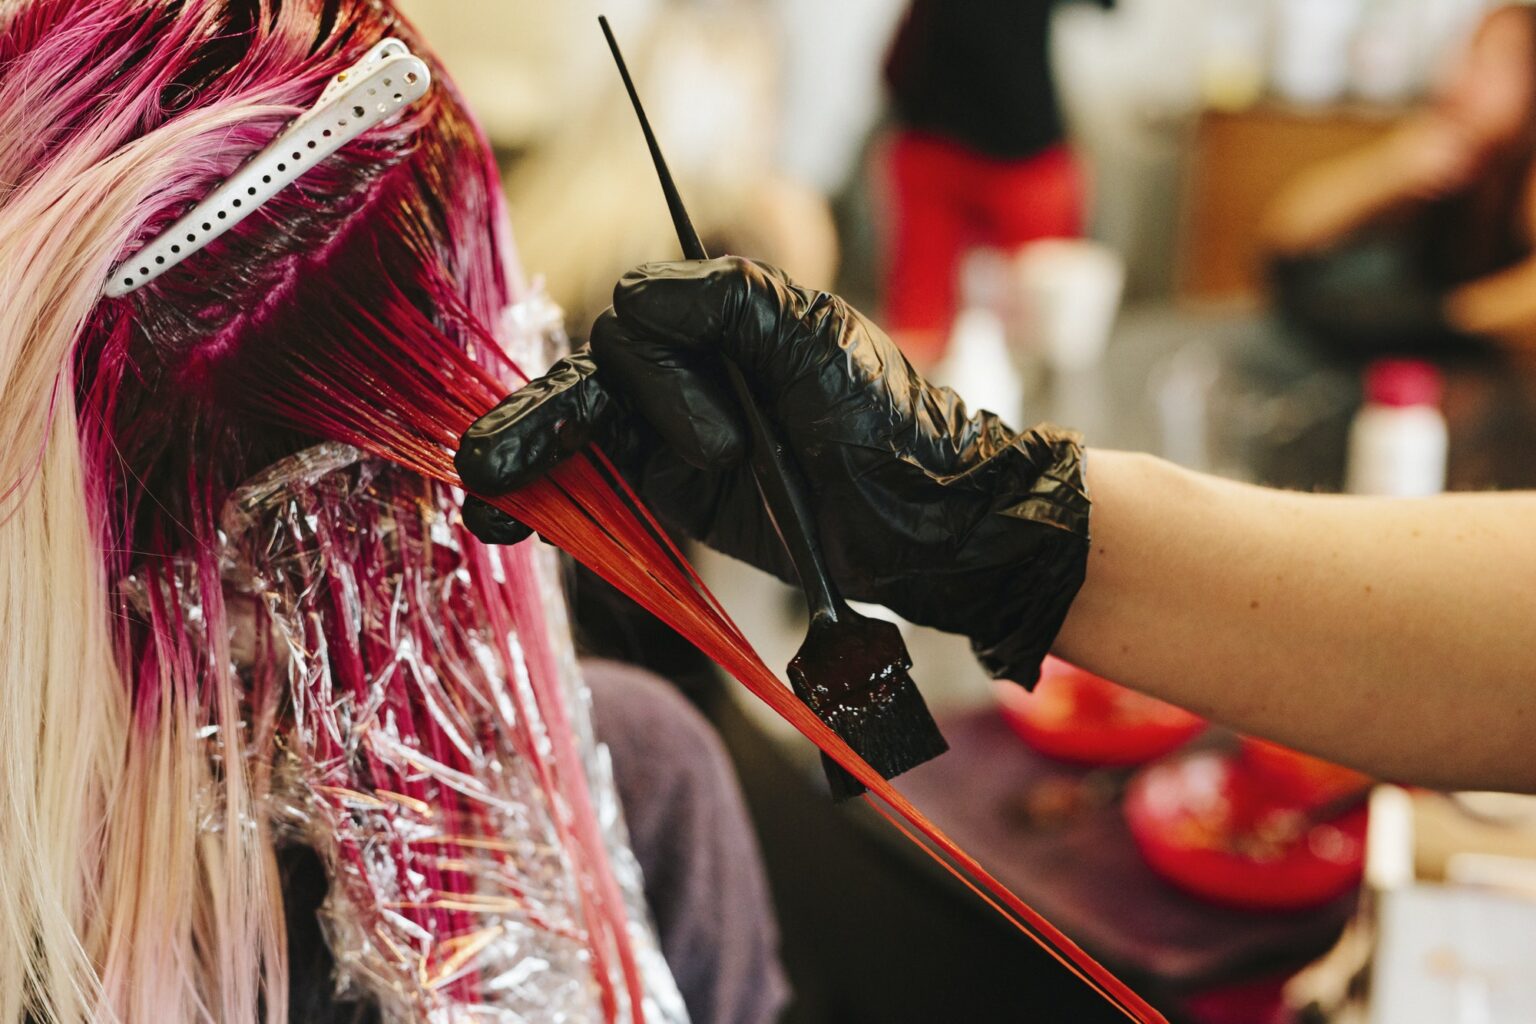 A hair colourist applying pink hair colour to a client's long blonde hair.